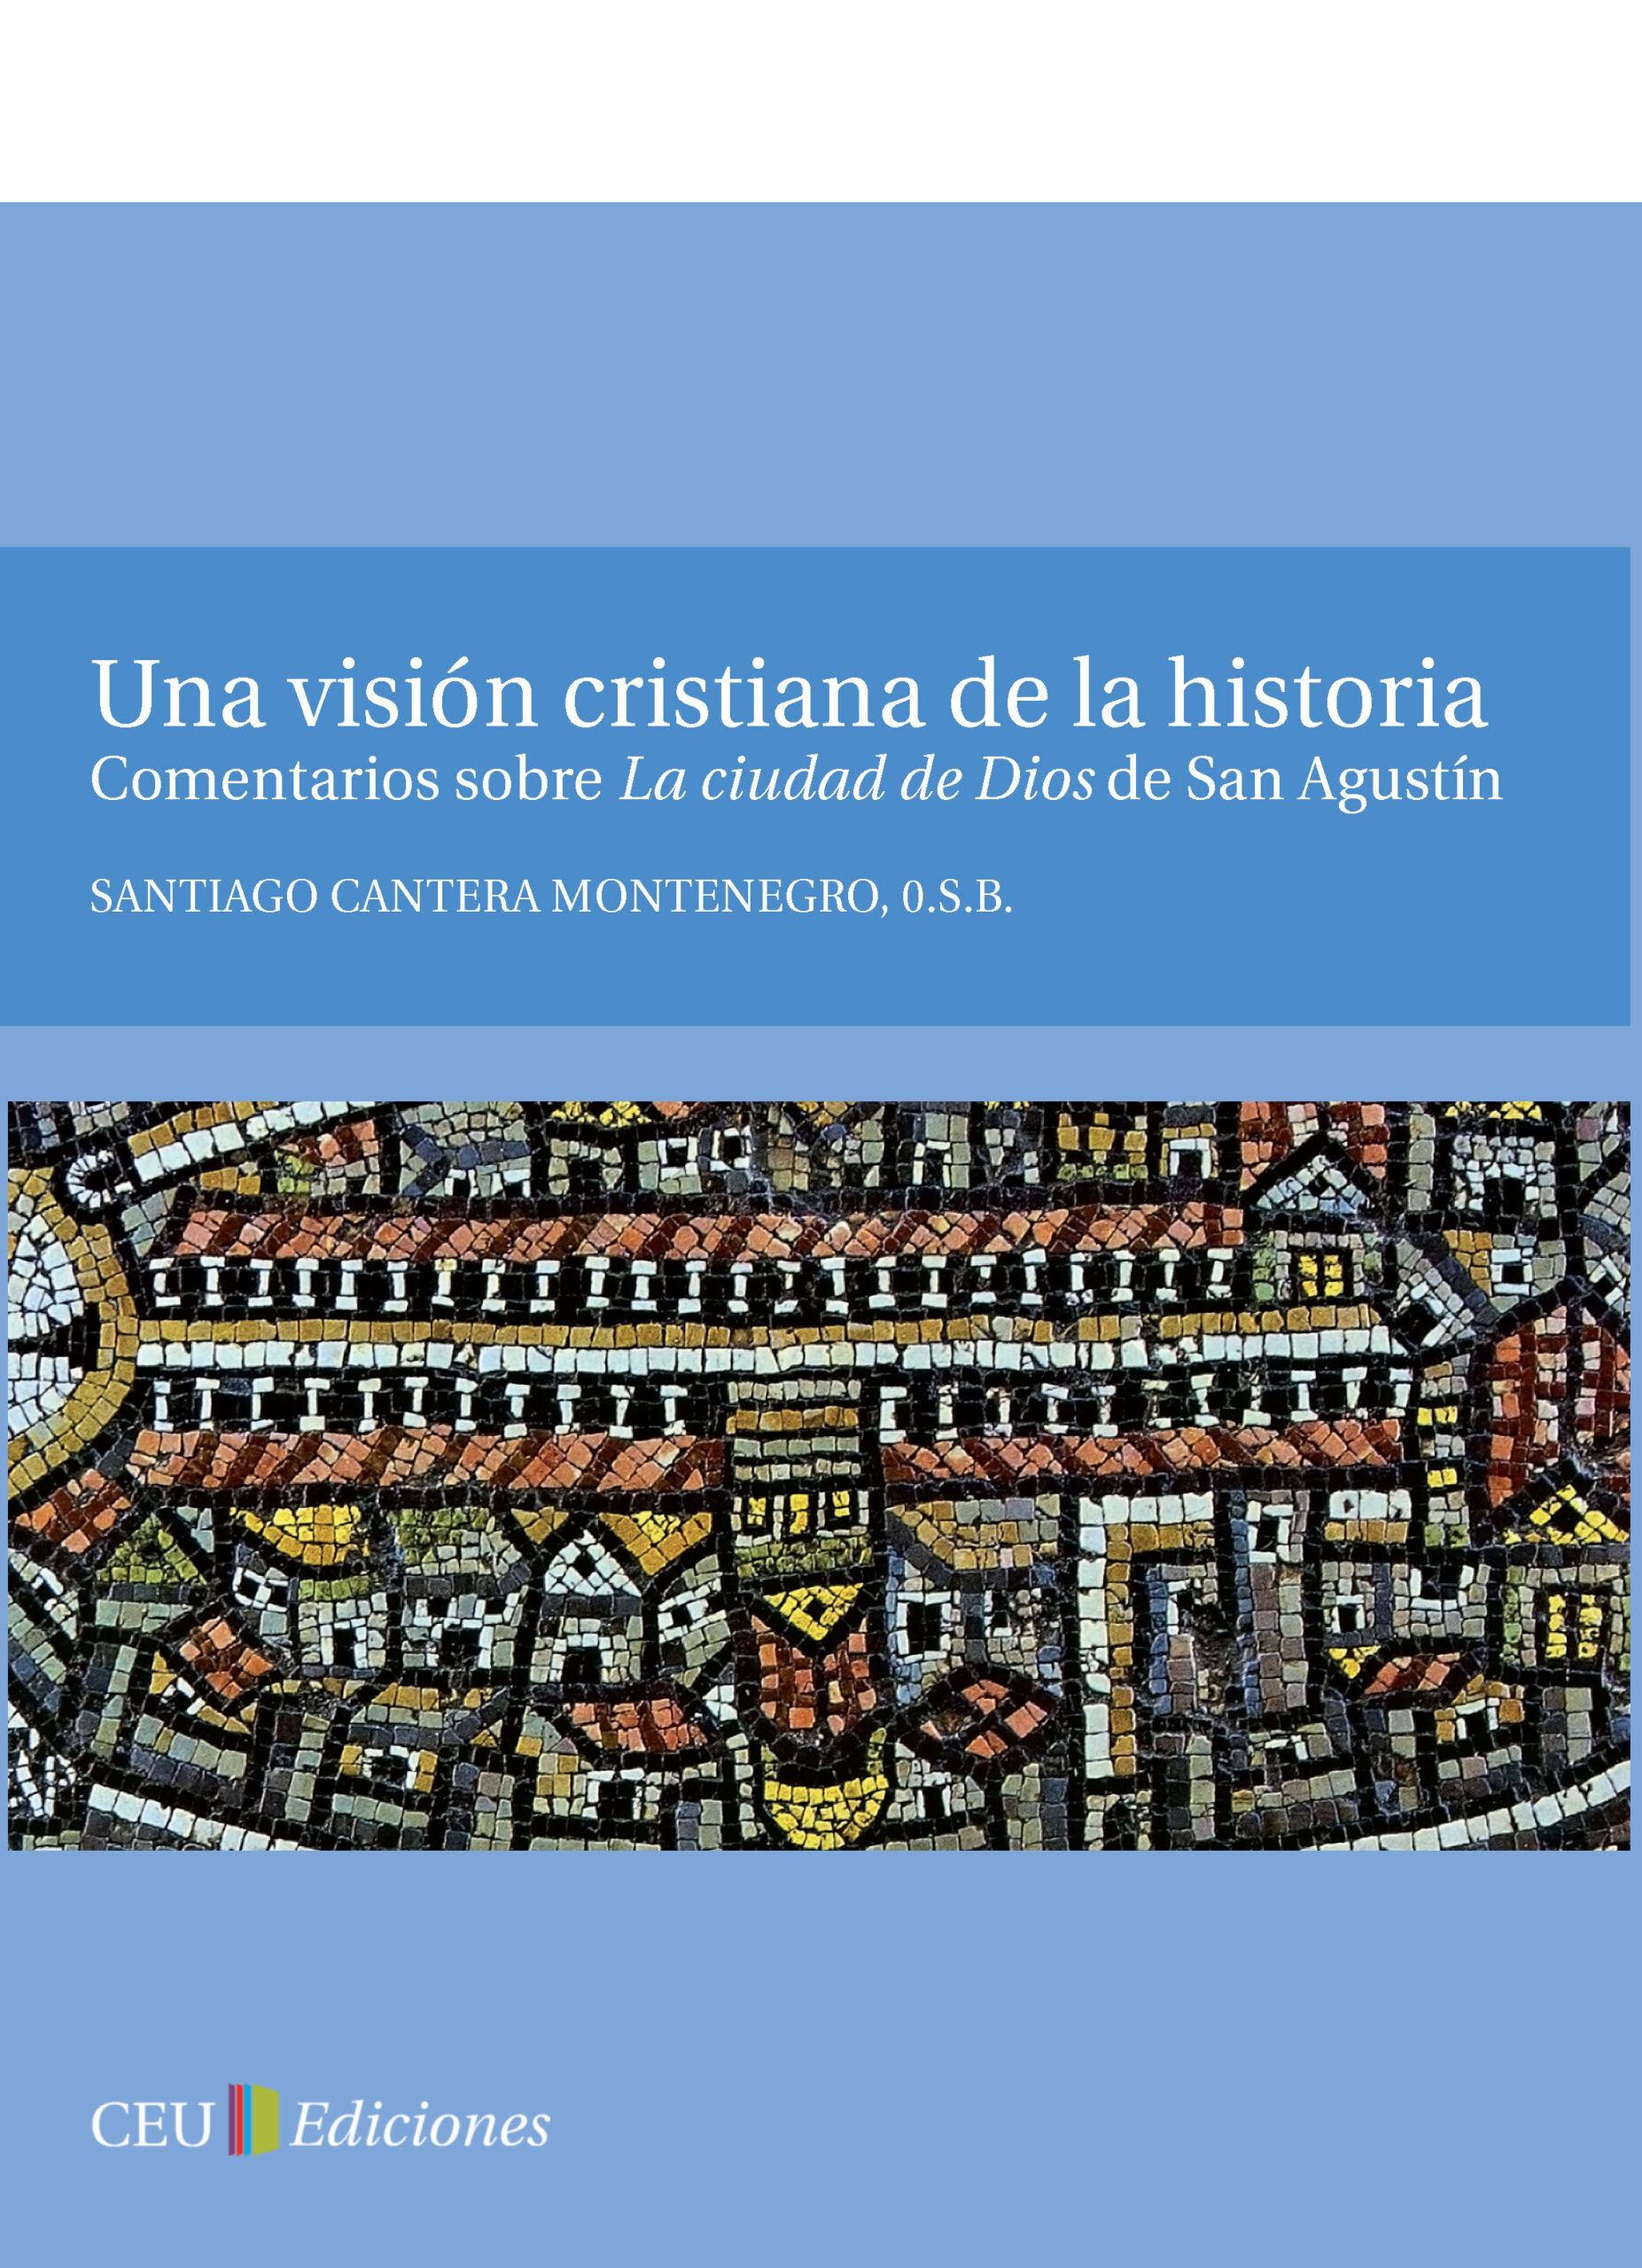 Imagen de portada del libro Una visión cristiana de la historia